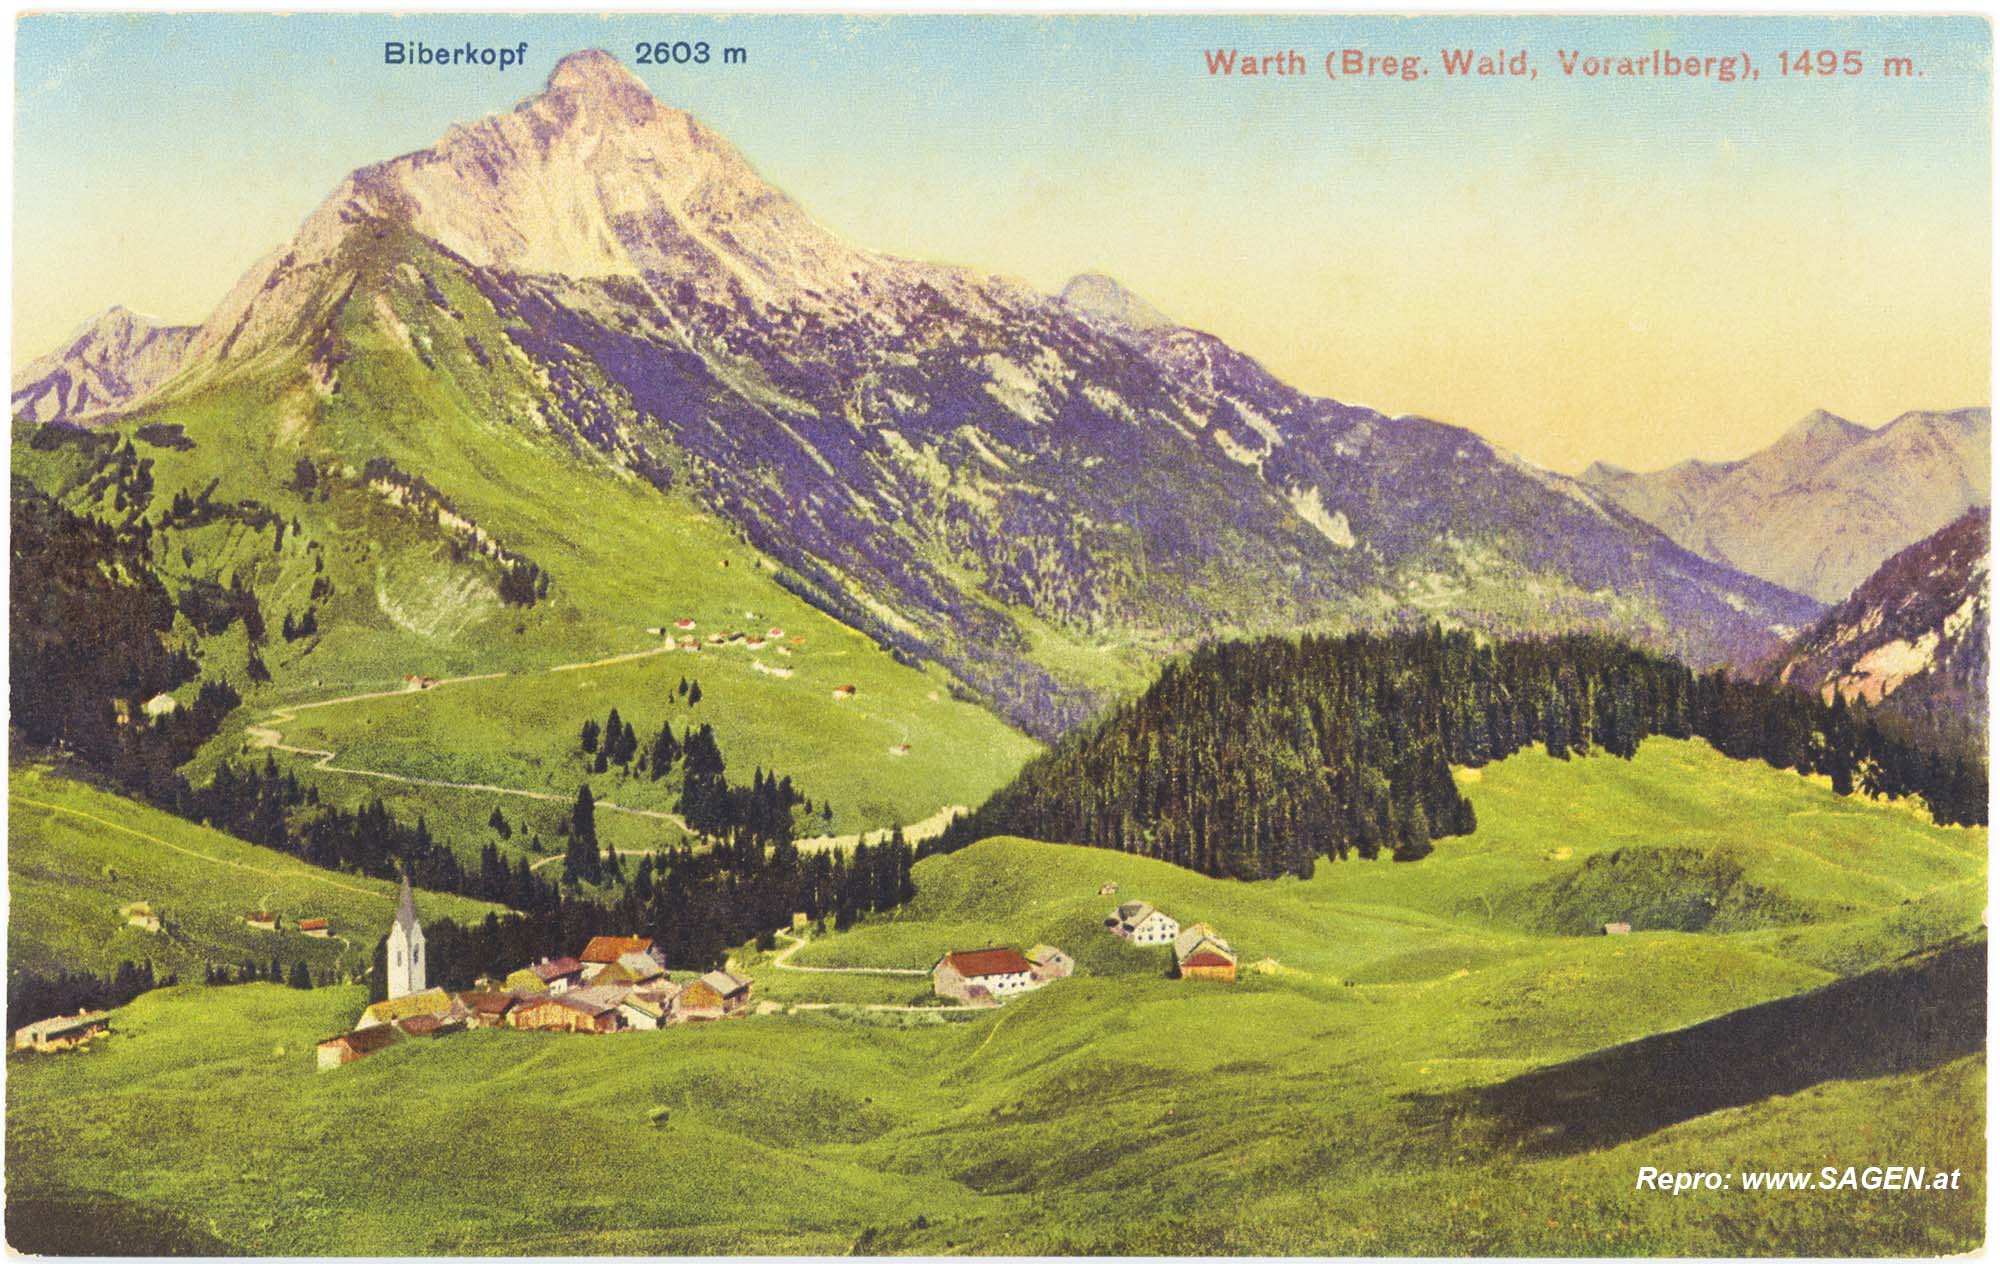 Warth, Bregenzer Wald